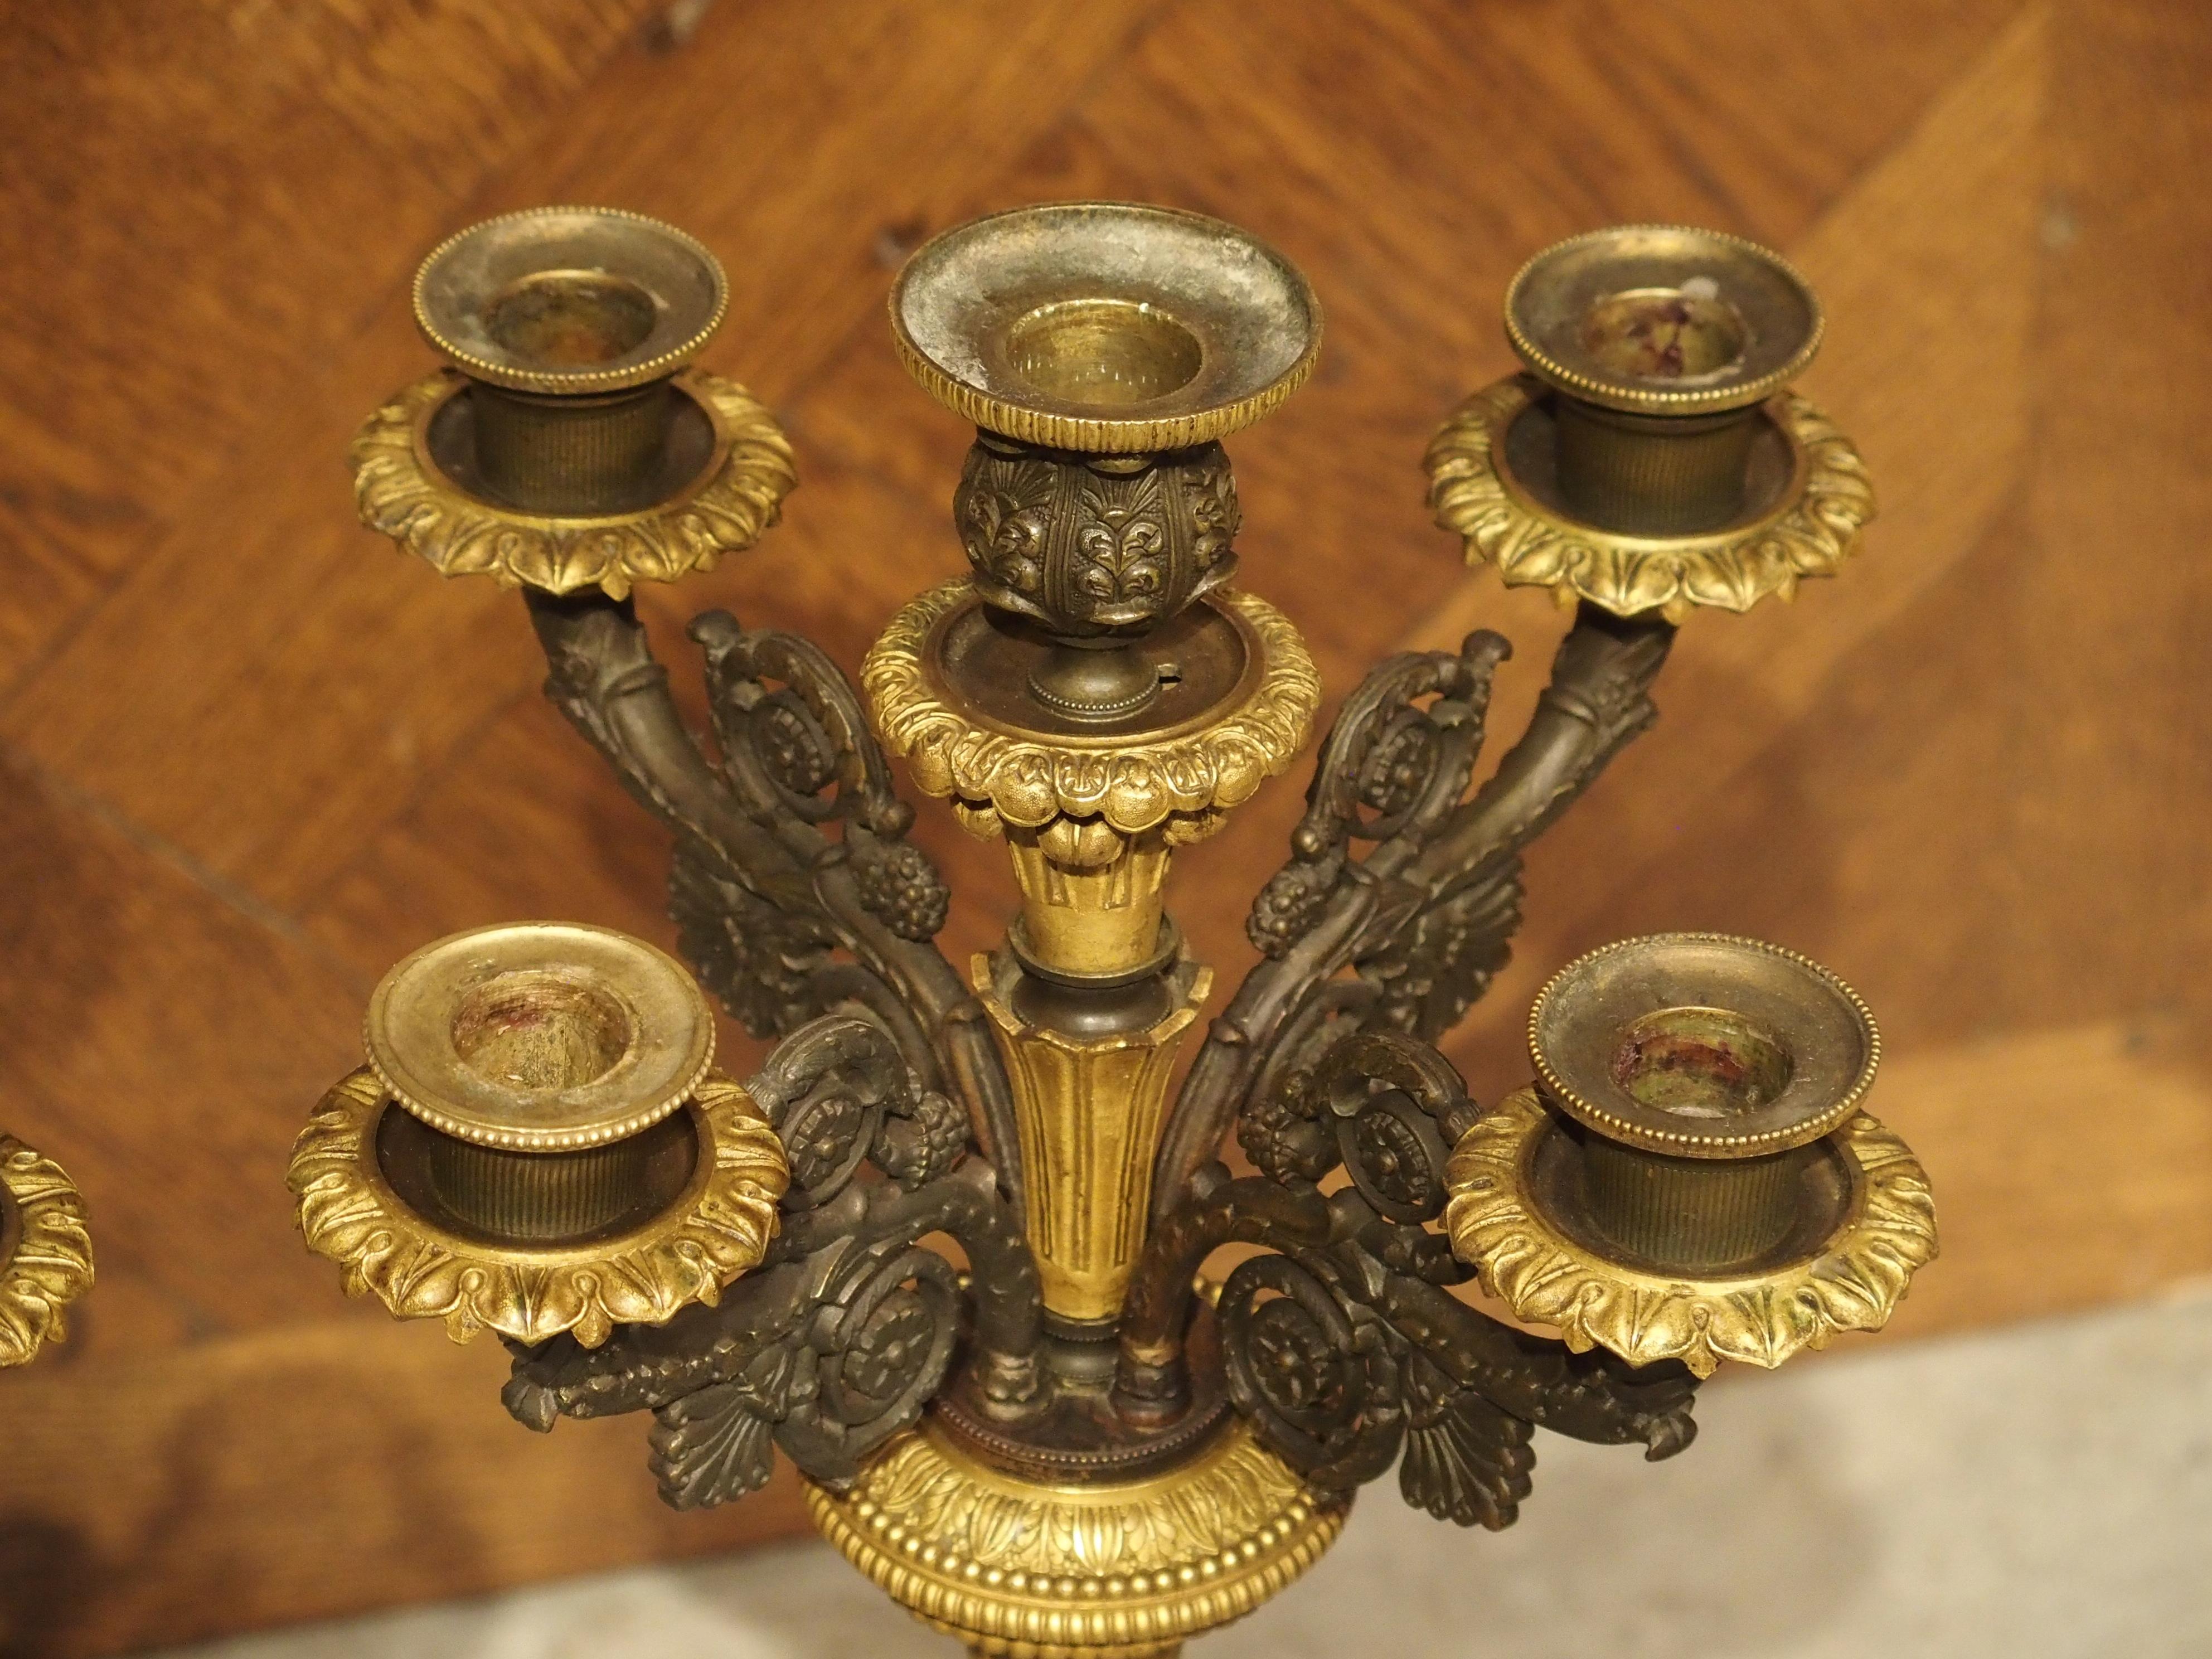 Cette paire de candélabres à cinq lumières en bronze a été produite en France au début des années 1800, pendant la période de l'Empire qui coïncide avec le règne de Napoléon. En vertu du décret de Napoléon selon lequel un roi n'est roi que